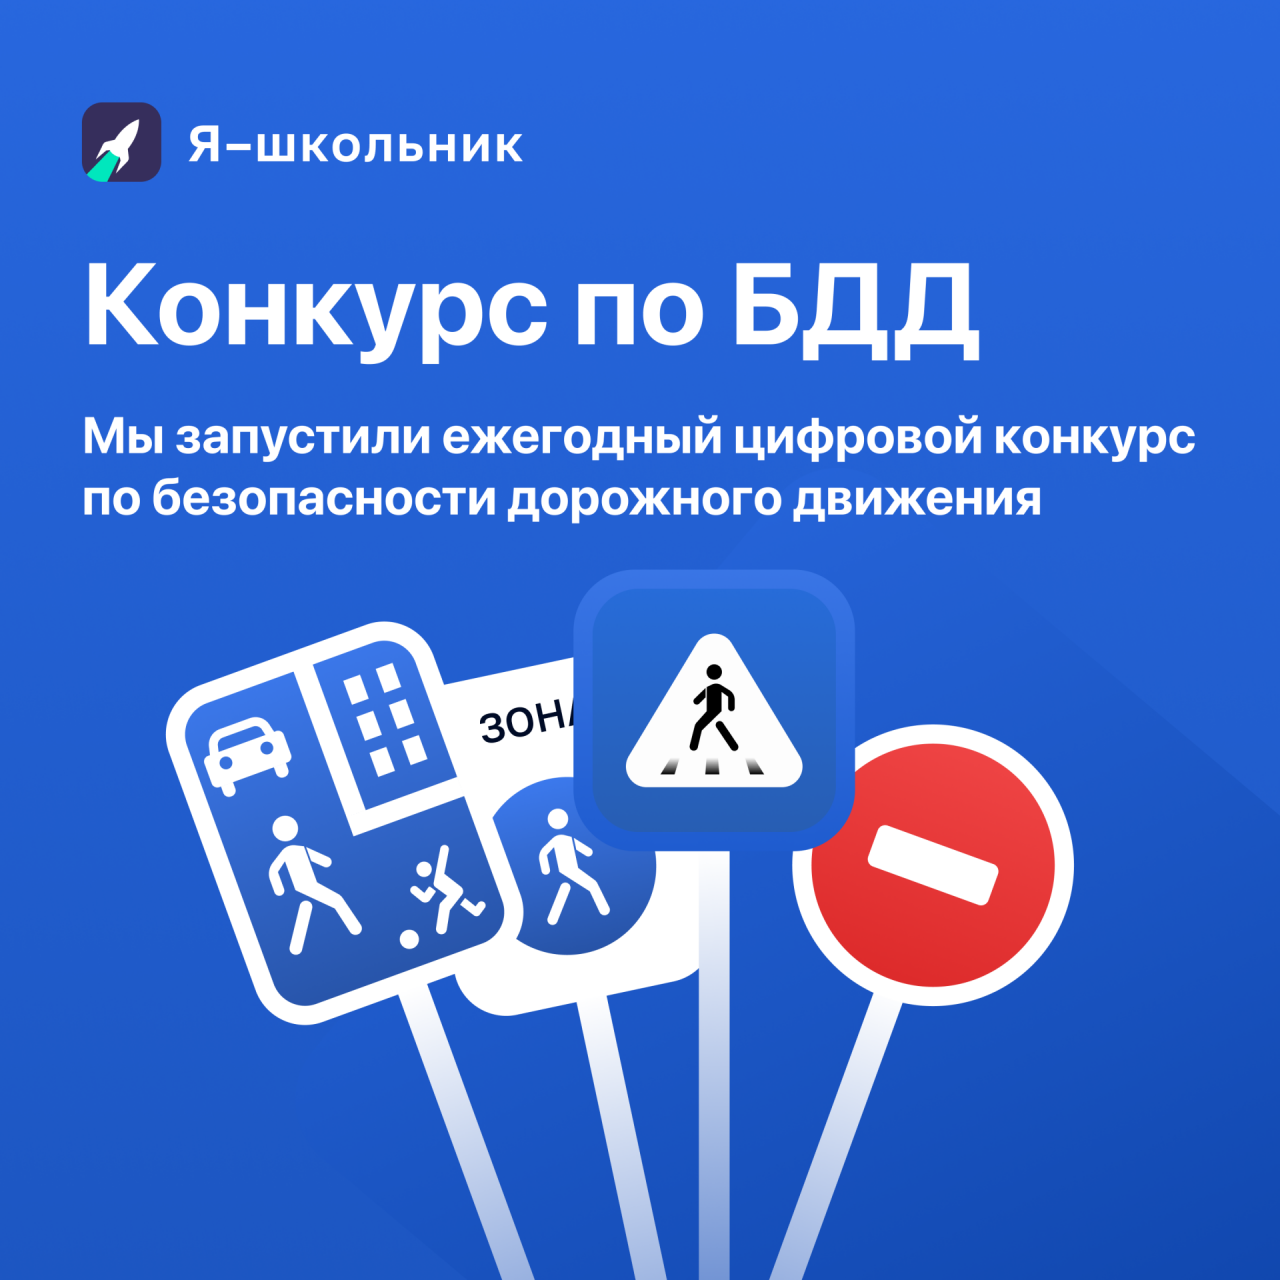 Школьники из Татарстана могут получить смартфоны за знание правил БДД